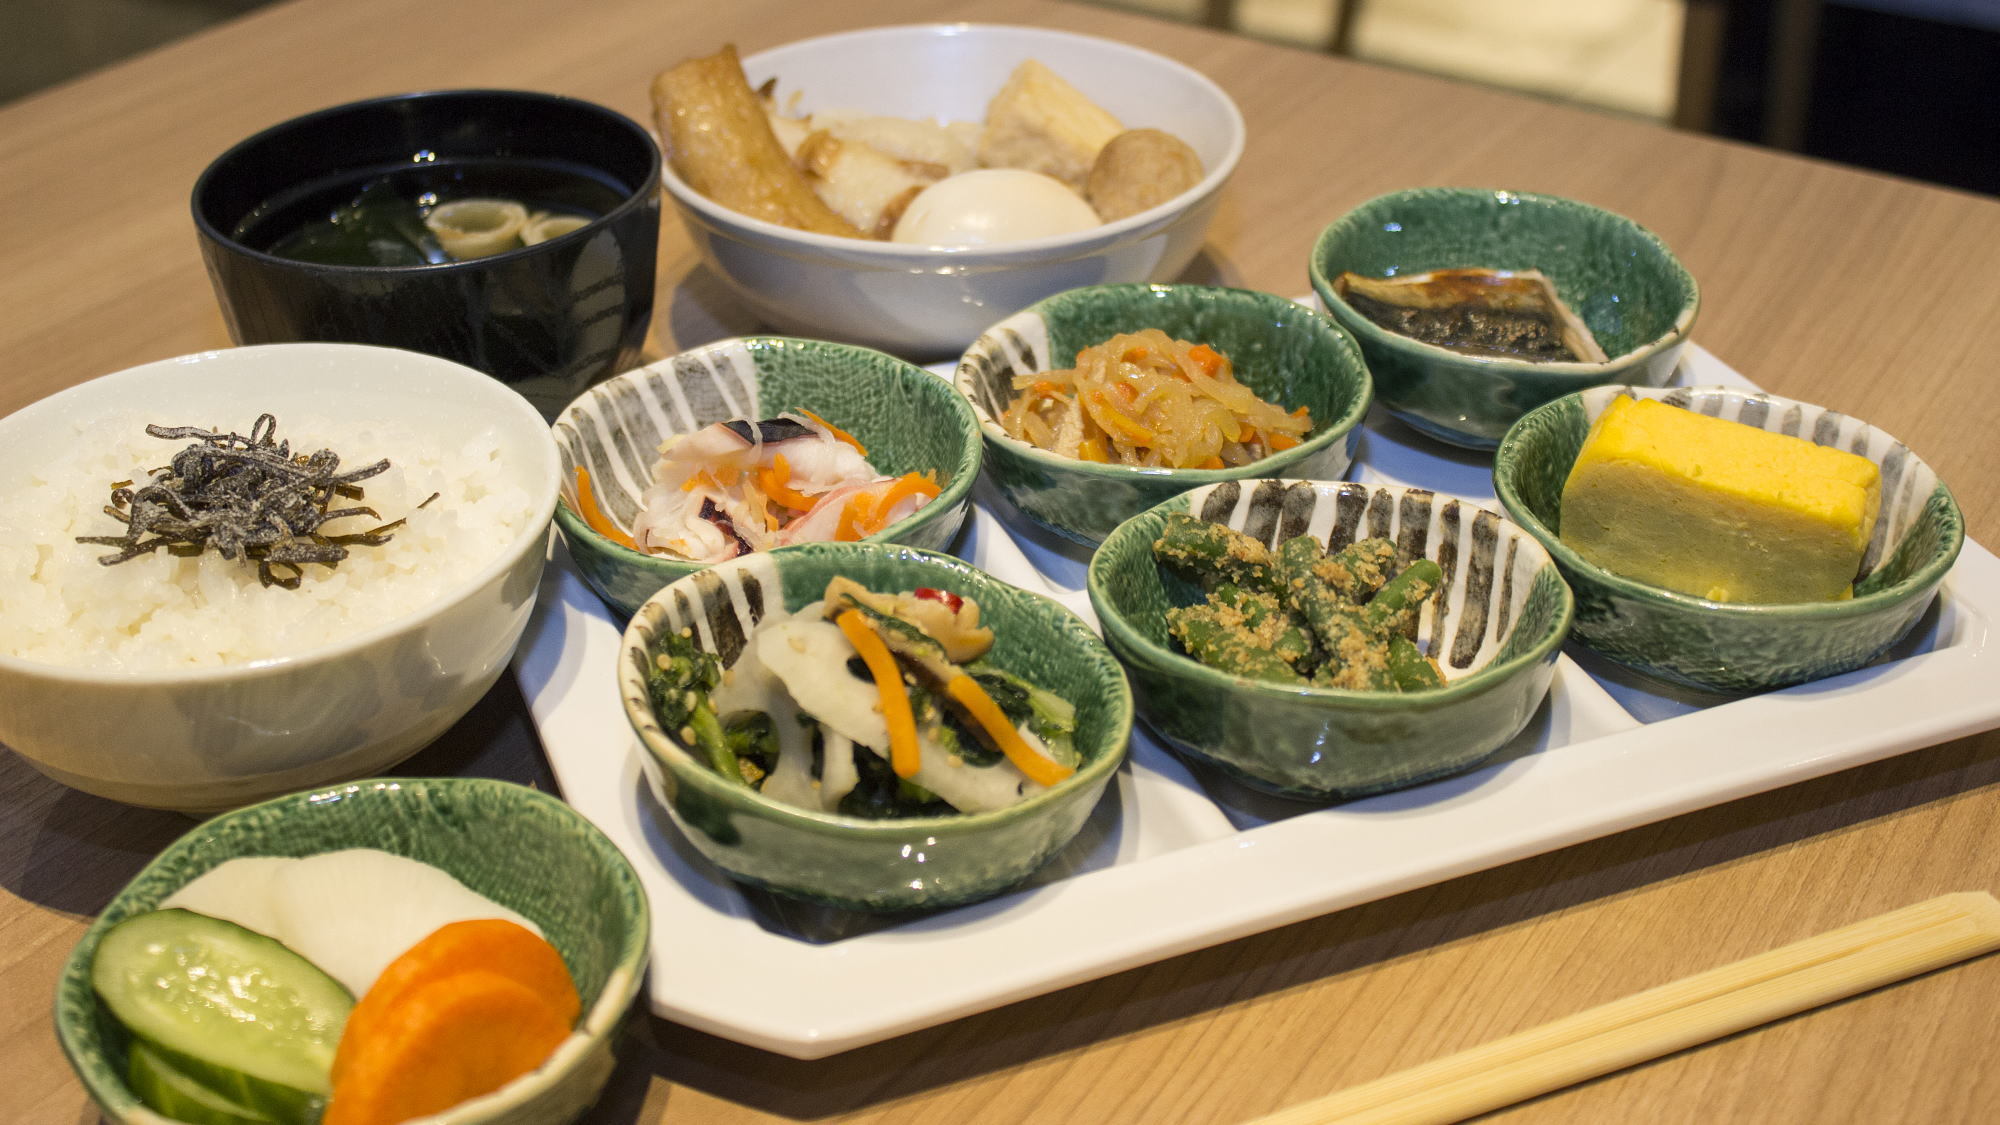 １Ｆレストラン「パティオ」朝食バイキング：おばんざいやおでんなど京都のお出汁をご堪能ください。